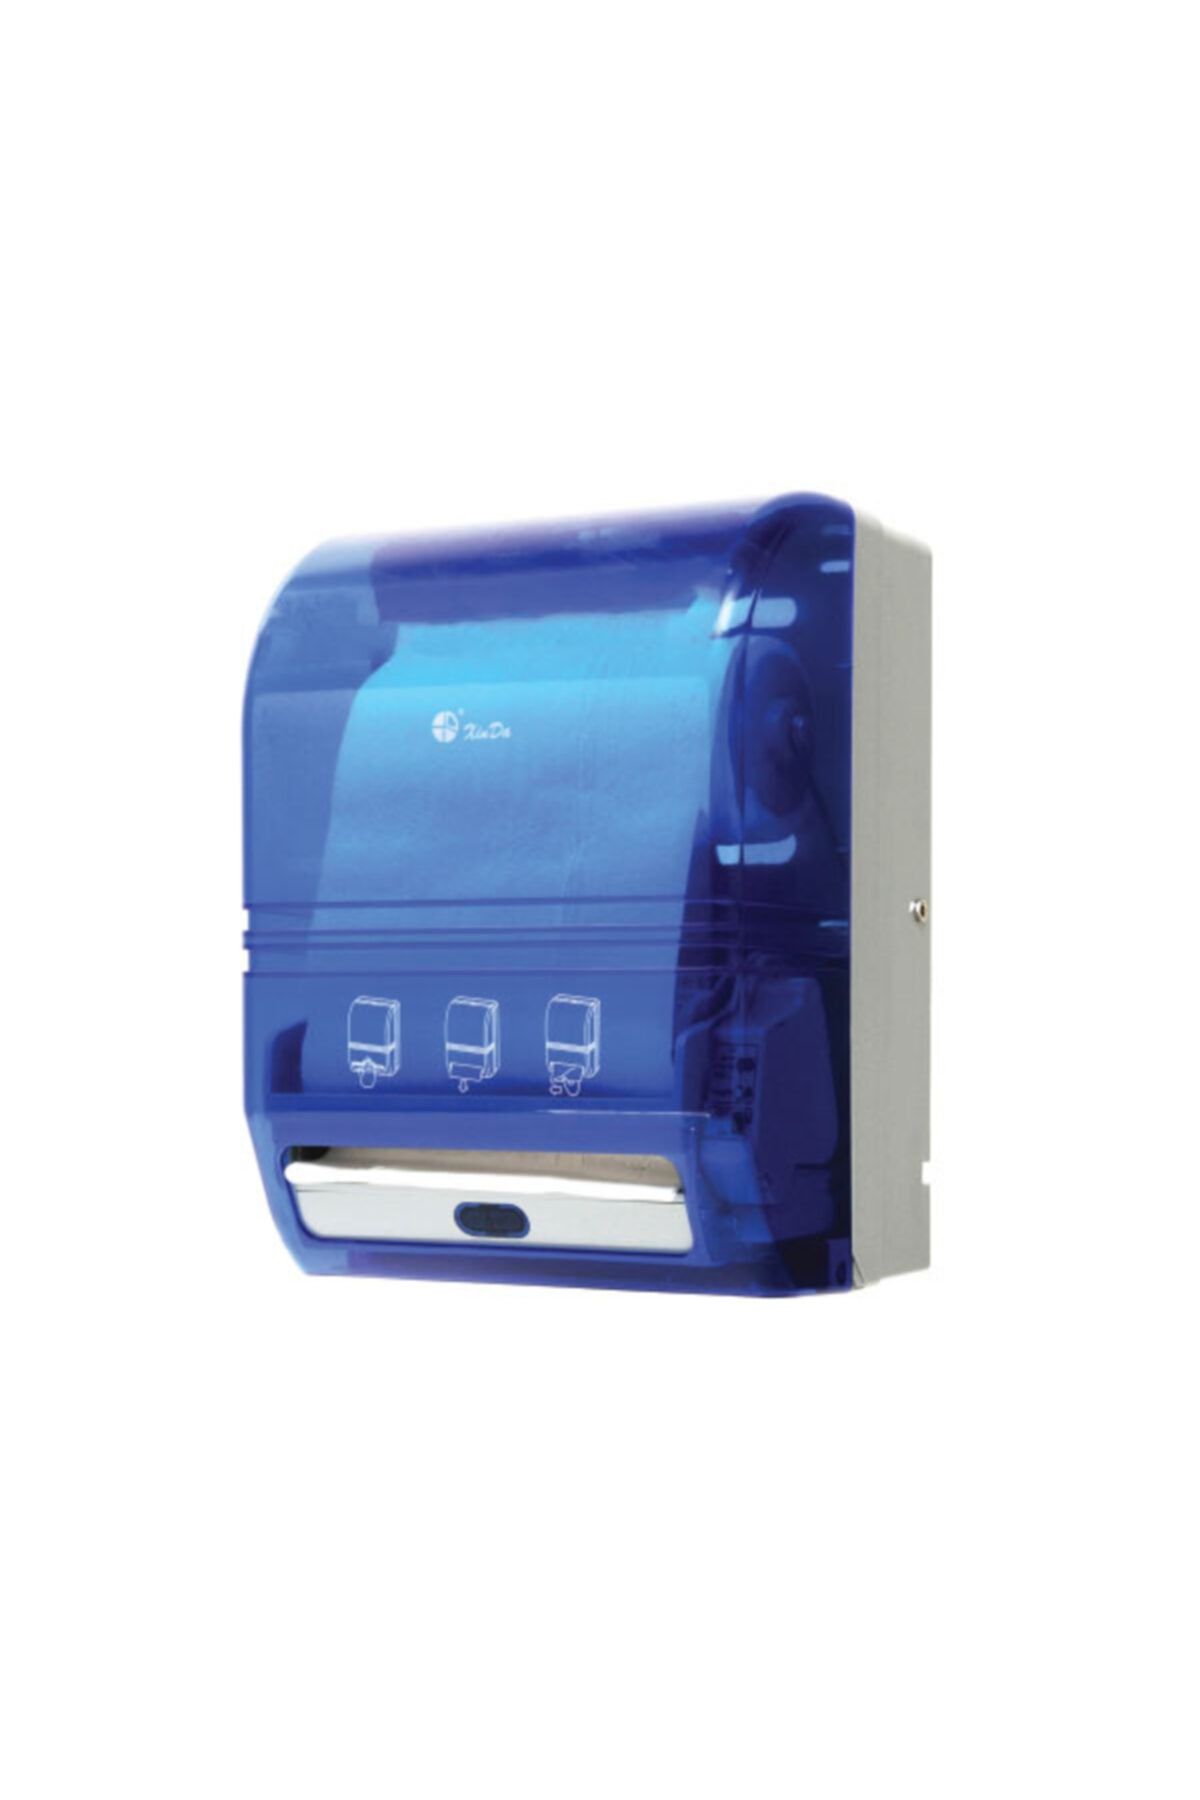 Xinda Kağıt Havlu Makinasi Sensörlü Pilli / Elektirikli Mavi Ağırlik 3kg Boyut 285x215x390mm